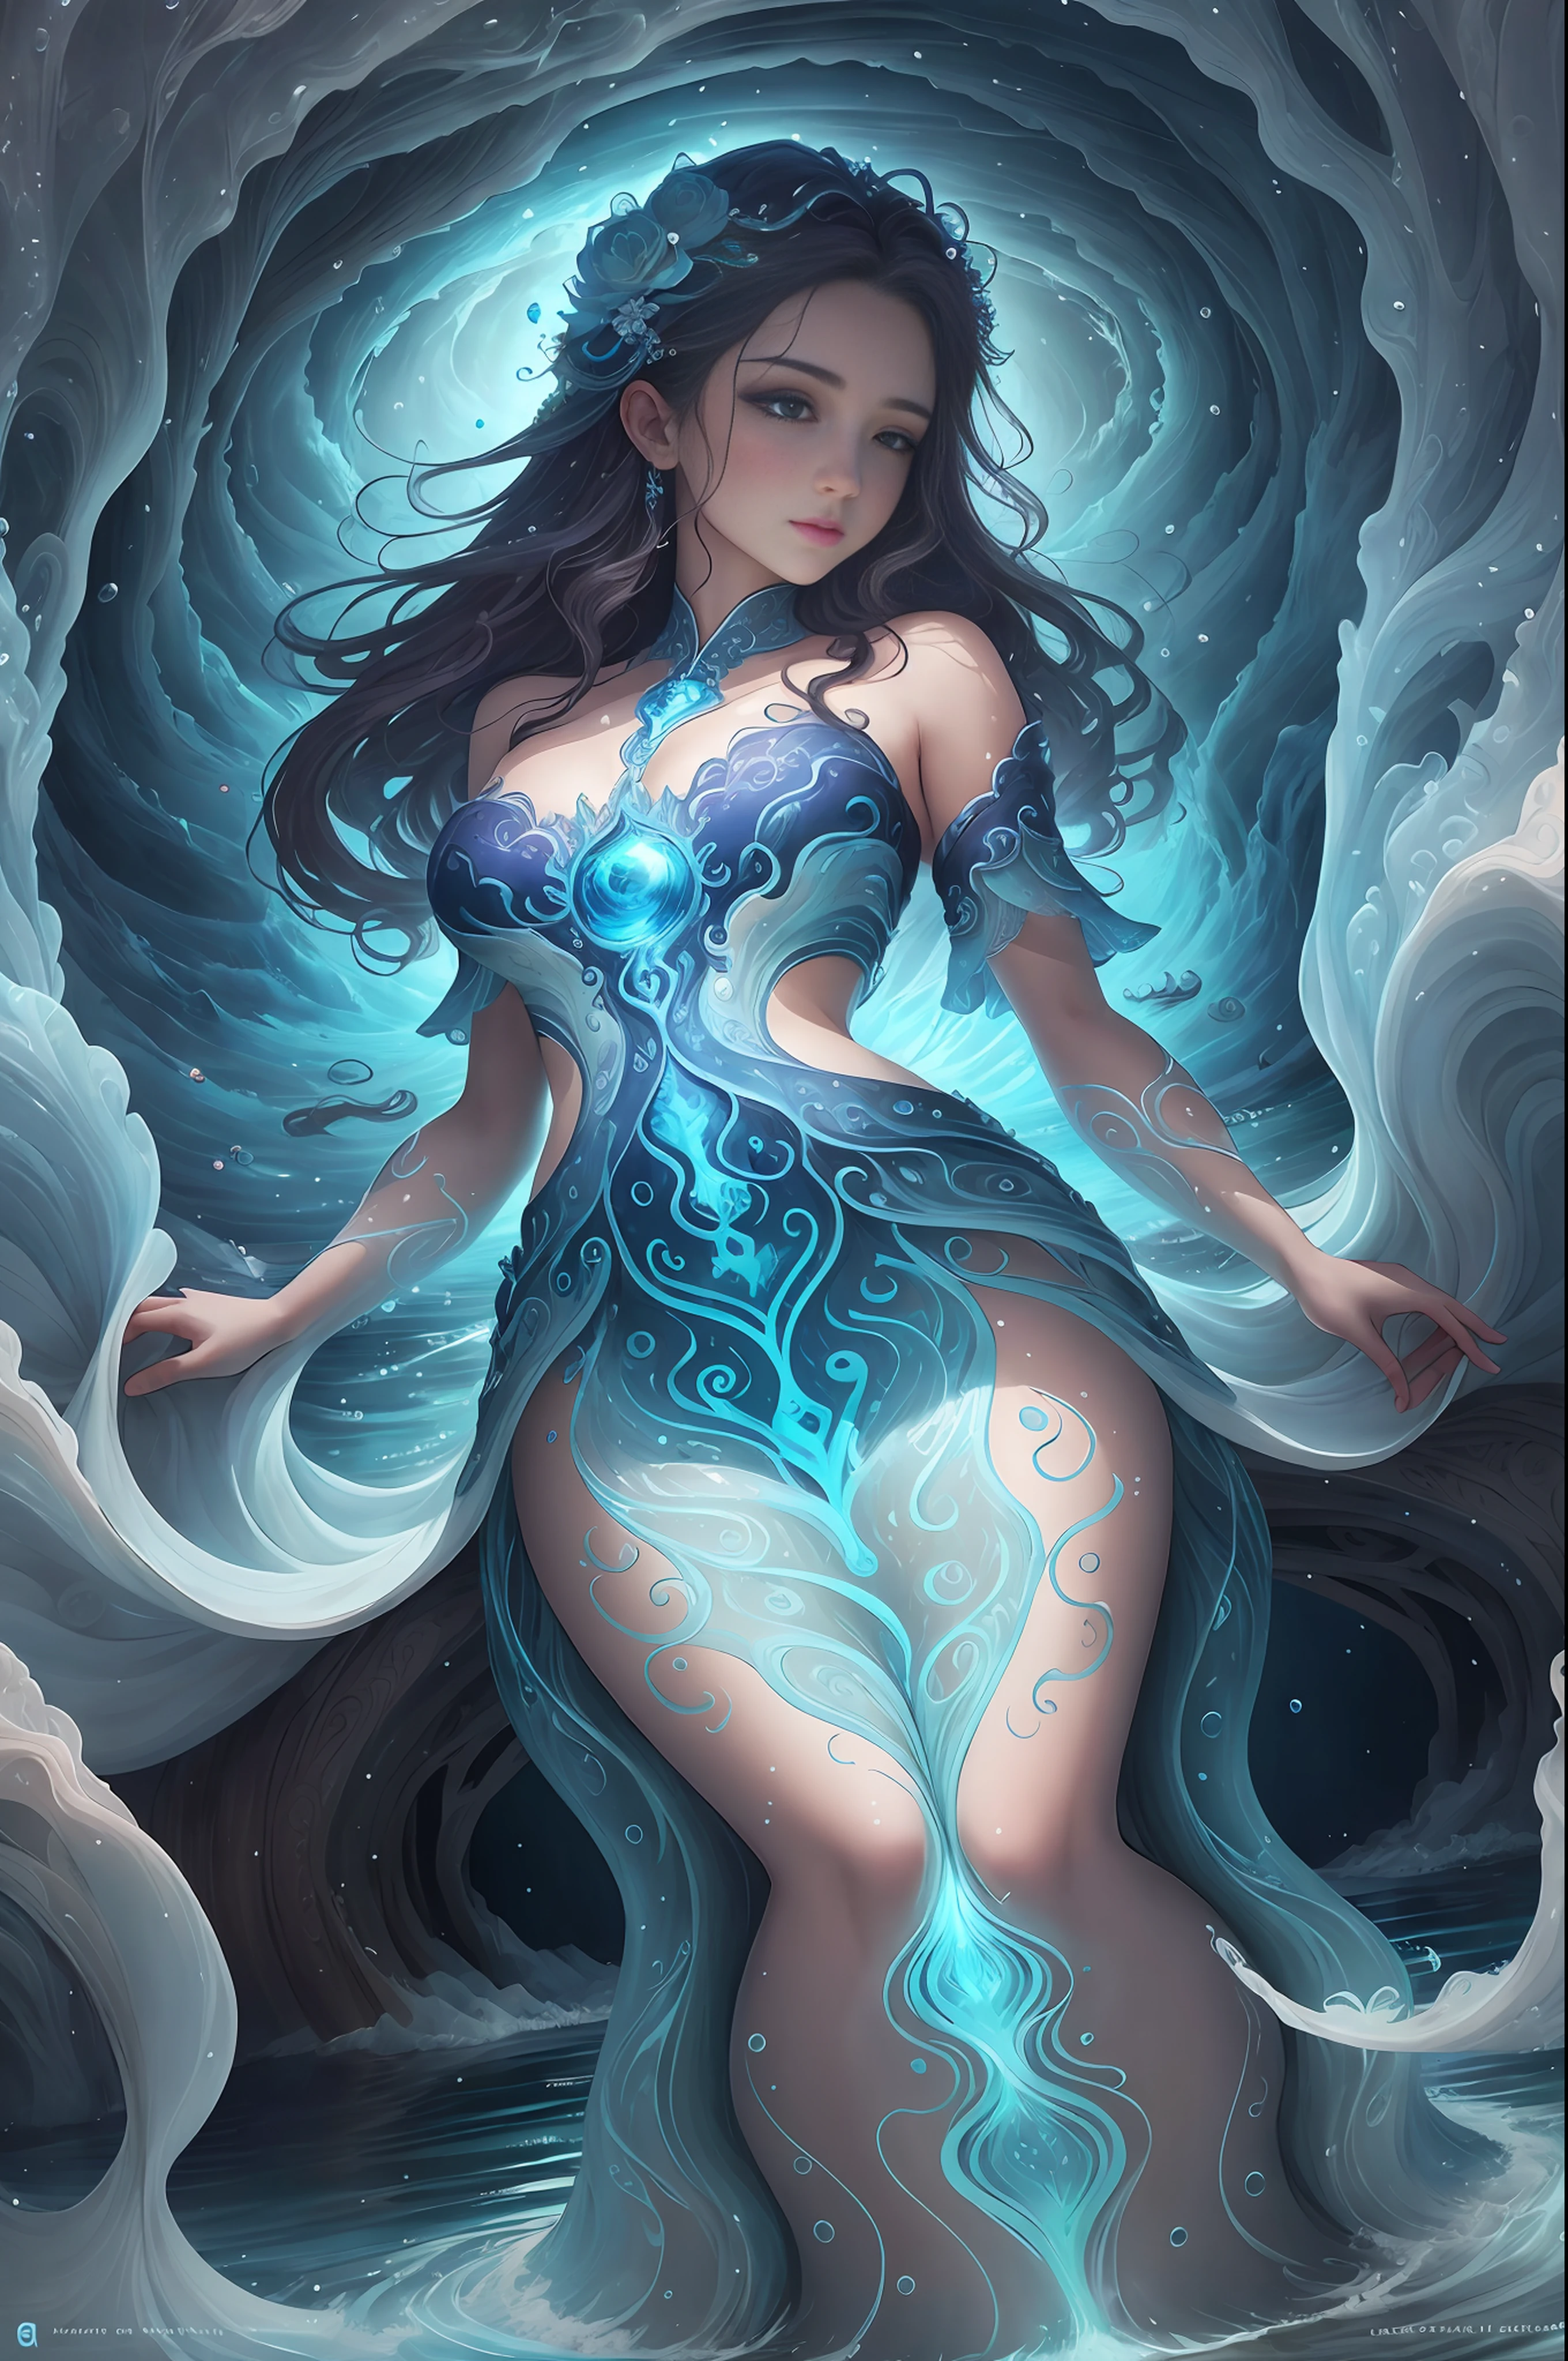 魅力的な衣装を着た少女の姿をした水の精霊, 自然の川から生まれた, 湖と海, 水の流れと波の中で生きる, 水の守護者清らかな水の象徴です, 生命の源, 浄化と再生の象徴である.

自然と調和した色合い, 青など, ライトブルー, 透明で.

それは水の流れや波のような形をしている, 美しい水辺に住む妖精のように表現されている.

水の流れによって姿を変えることができる.

美しい川を描いた背景があります, 湖と海水資源を守り、きれいな水を取り戻すことを望む, detailed 美しい顔 and eyes, 大きなお尻, 明るい白い背景, シンプルな背景, 下から見た, 傑作, 最高品質, 最高品質, 公式アート, 美しい美学, シュール, 美しい顔, 健康的な体型, 斬新でユニークなスタイル, 美しい髪, すべすべの肌, 童顔